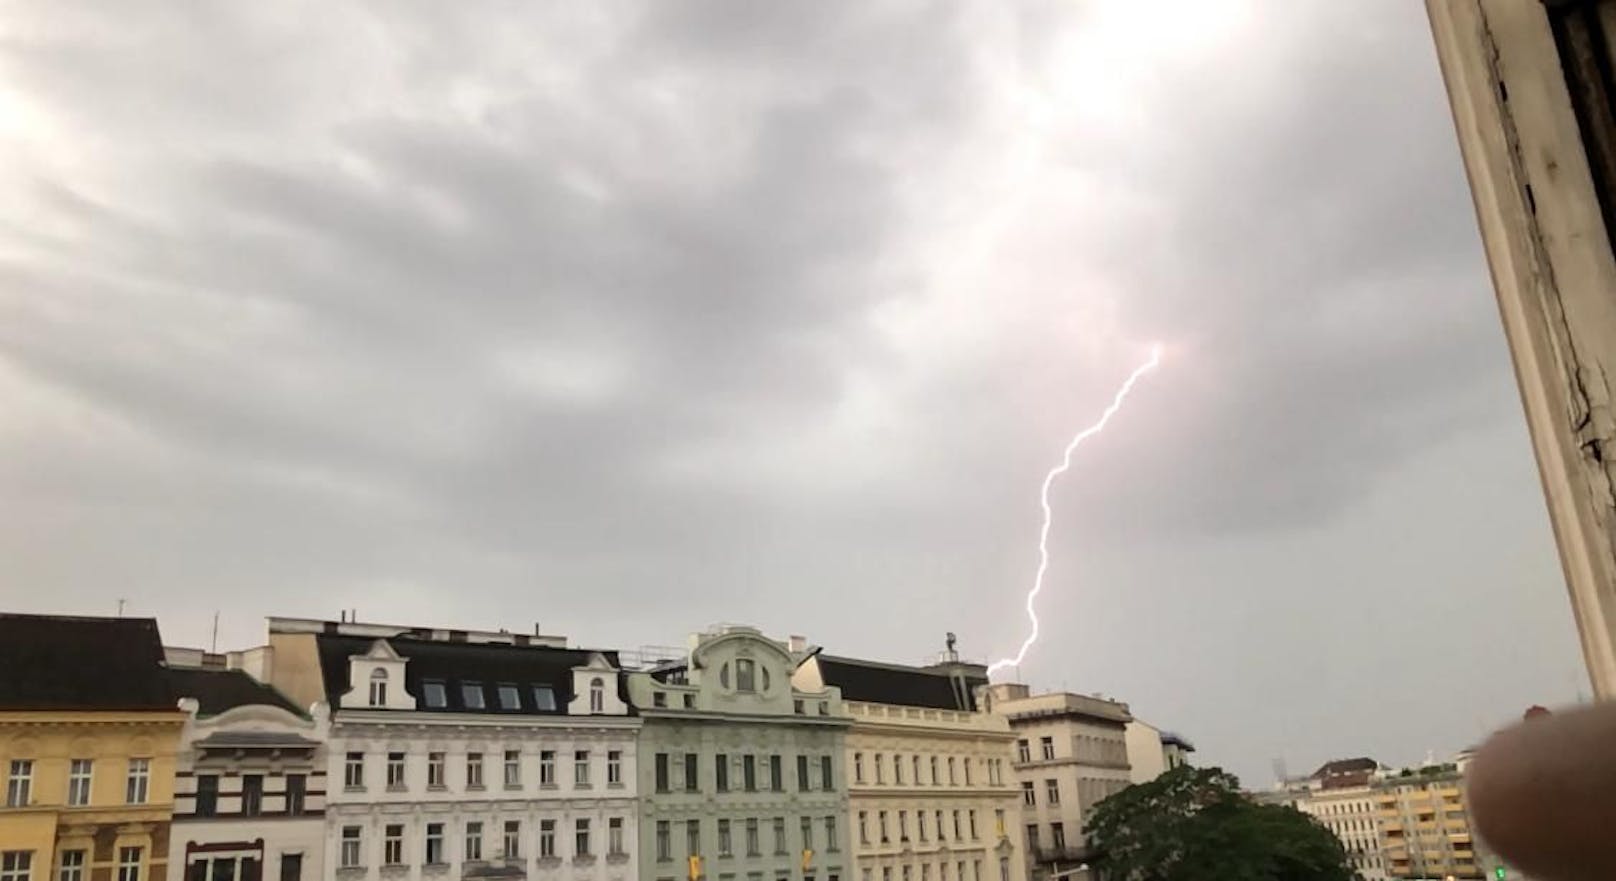 Wien wird von einem starken Gewitter getroffen. In der Nacht wurden weiter kräftiger Sturm, Starkregen und jede Menge Blitze erwartet.